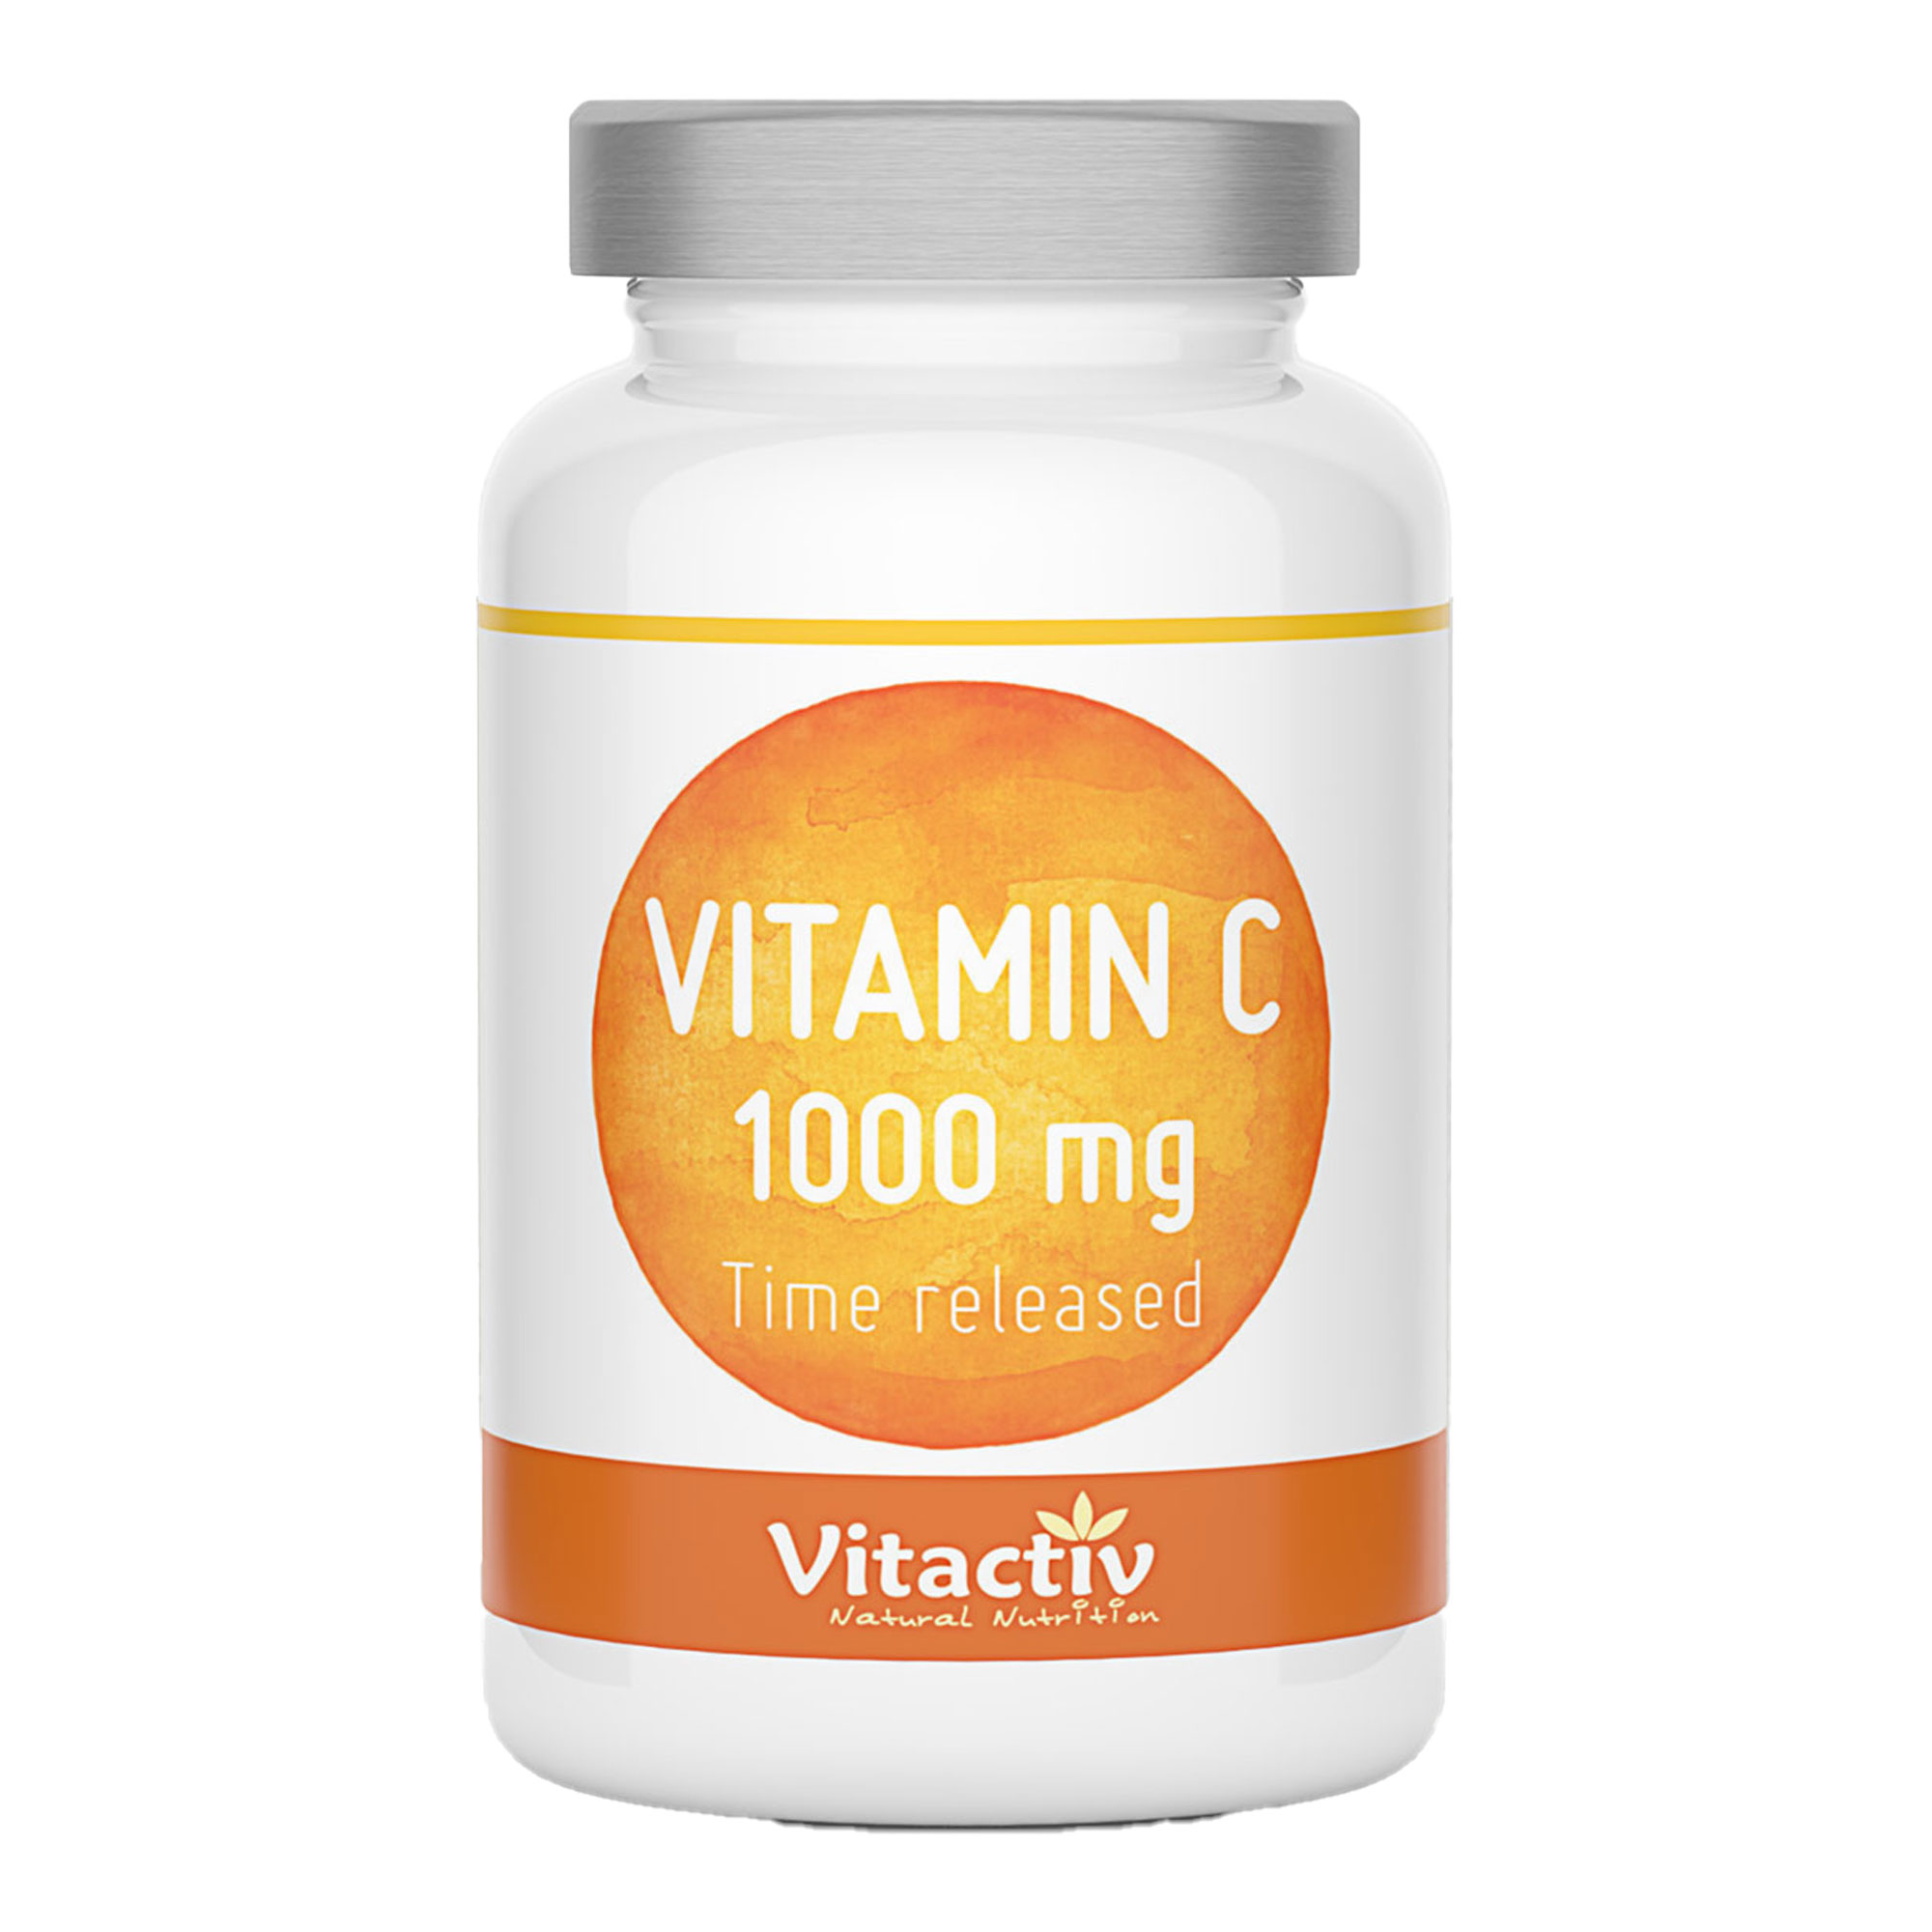 Nahrungsergänzungsmittel mit Vitamin C und Hagebutte.